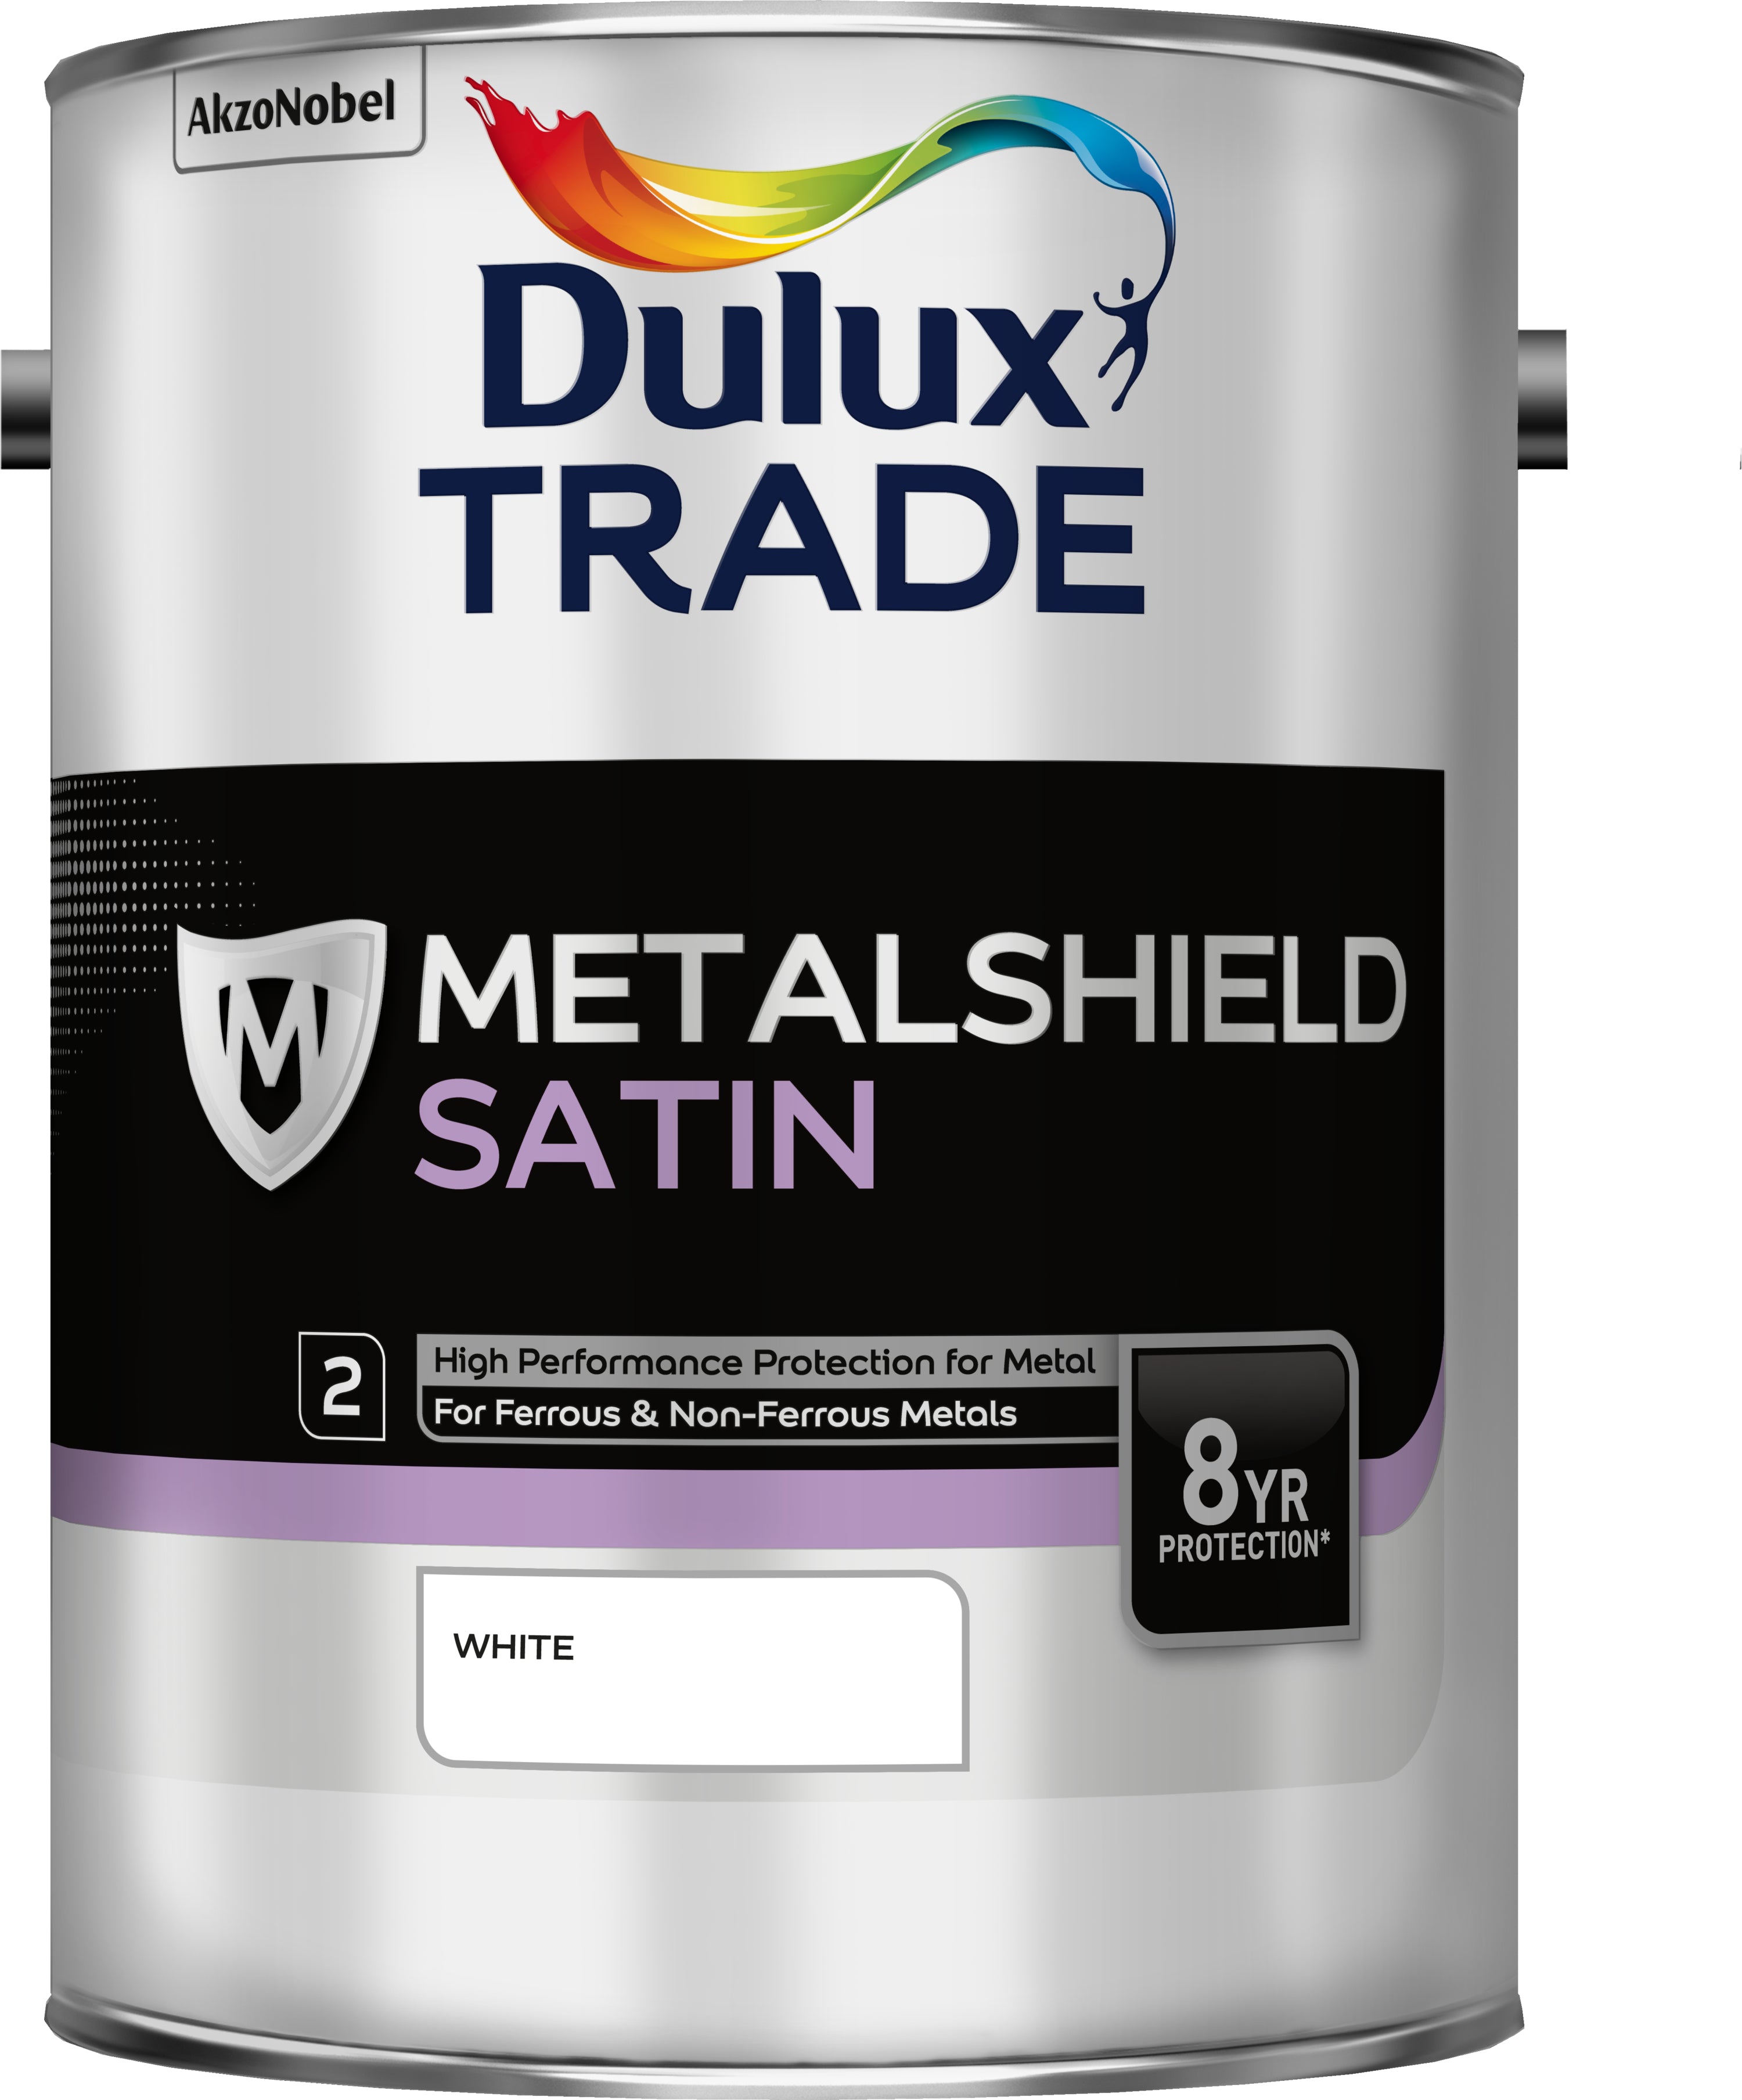 Dulux Trade Metalshield Satin White 5L